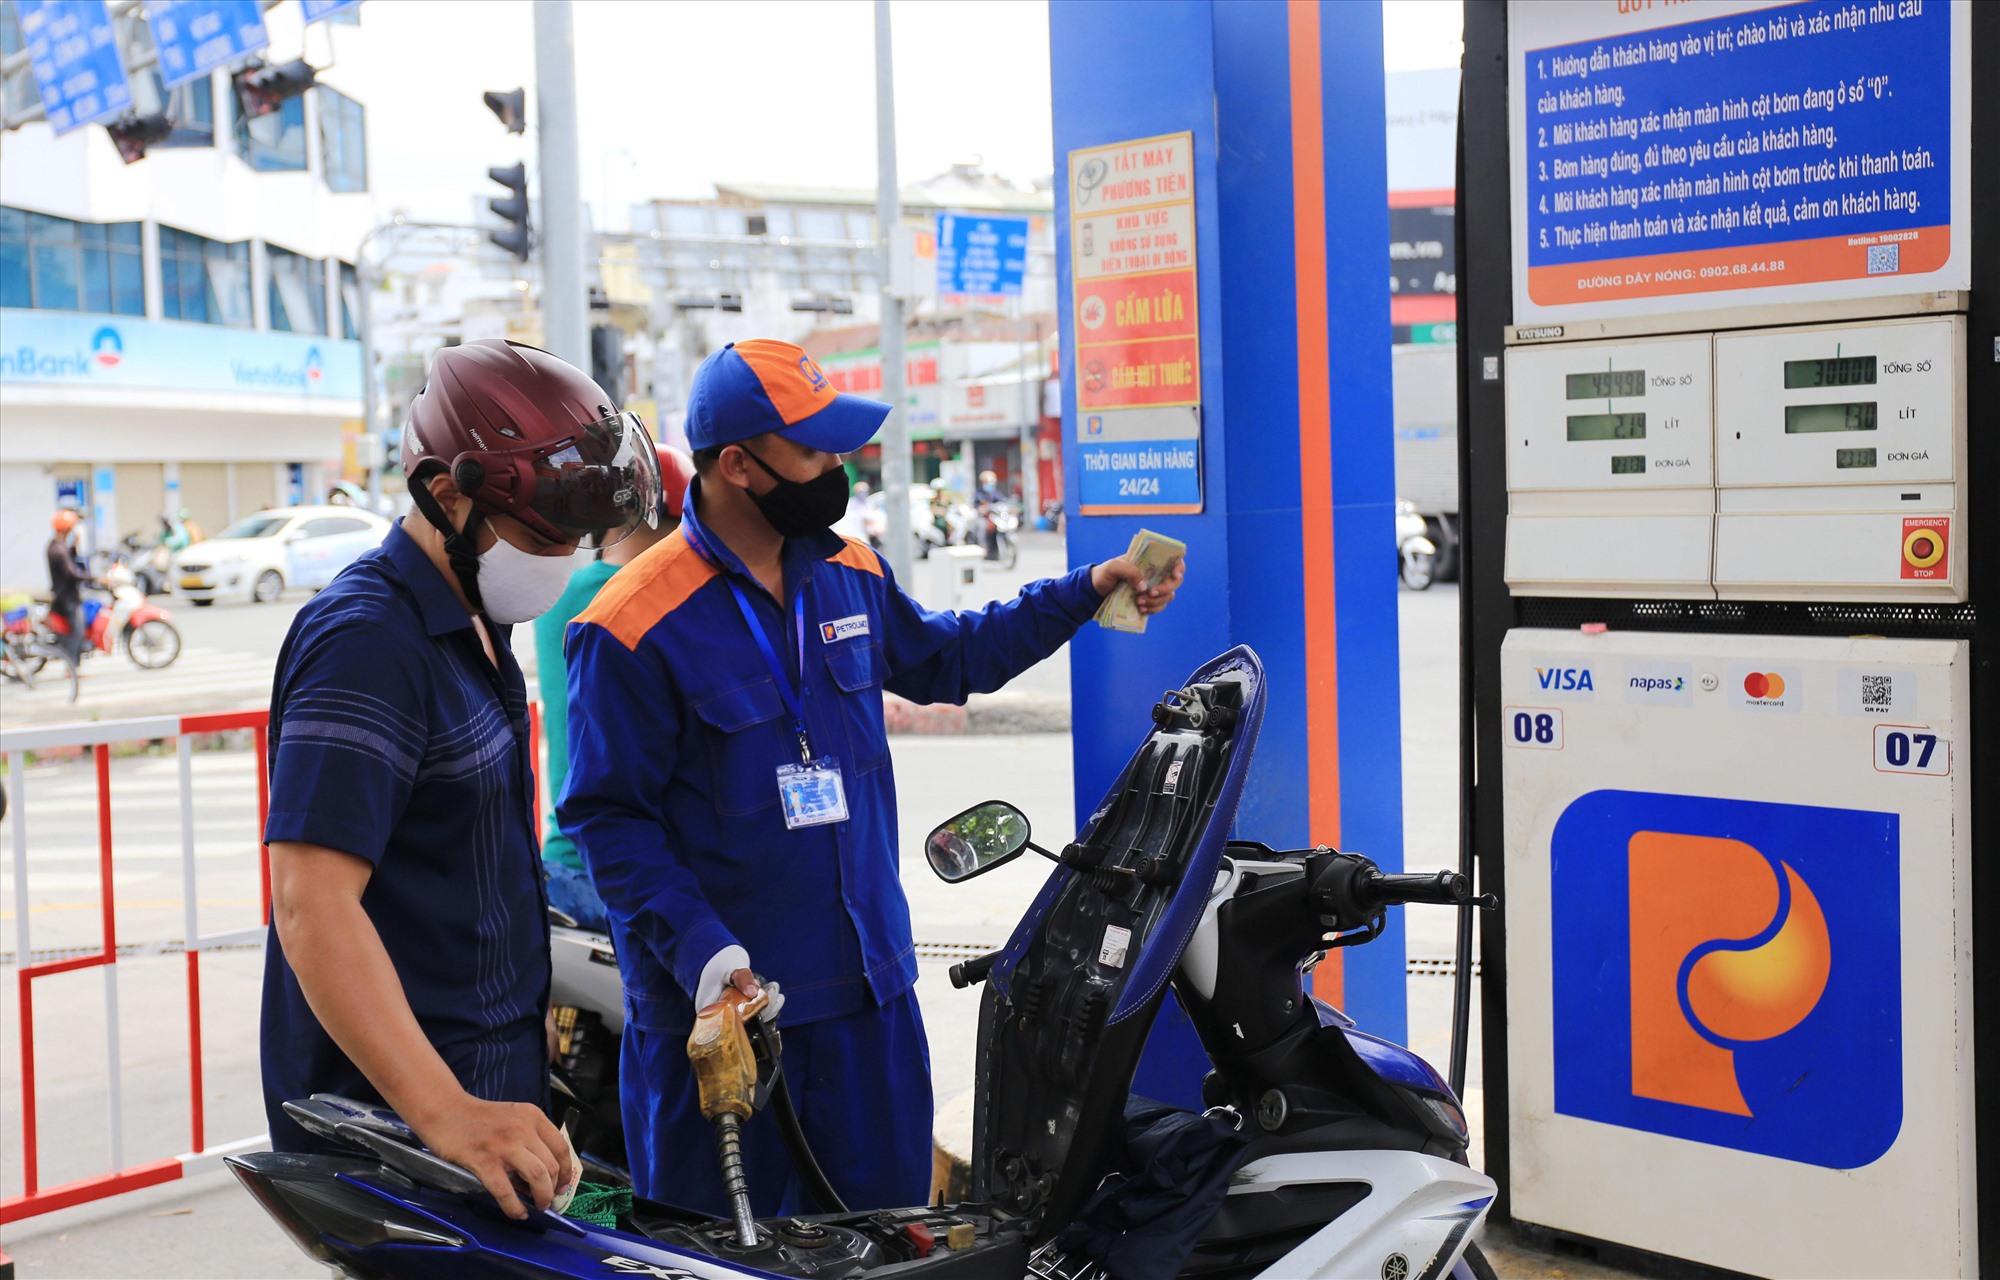 Cửa hàng xăng dầu Petrolimex ở góc ngã tư Hoàng Văn Thụ - Nguyễn Kiệm (Q.Phú Nhuận) hoạt động không bị gián đoạn. Vài ngày trước lượng khách tăng cao, nhưng đến nay đã ổn định, không còn xảy ra tình trạng đông người.